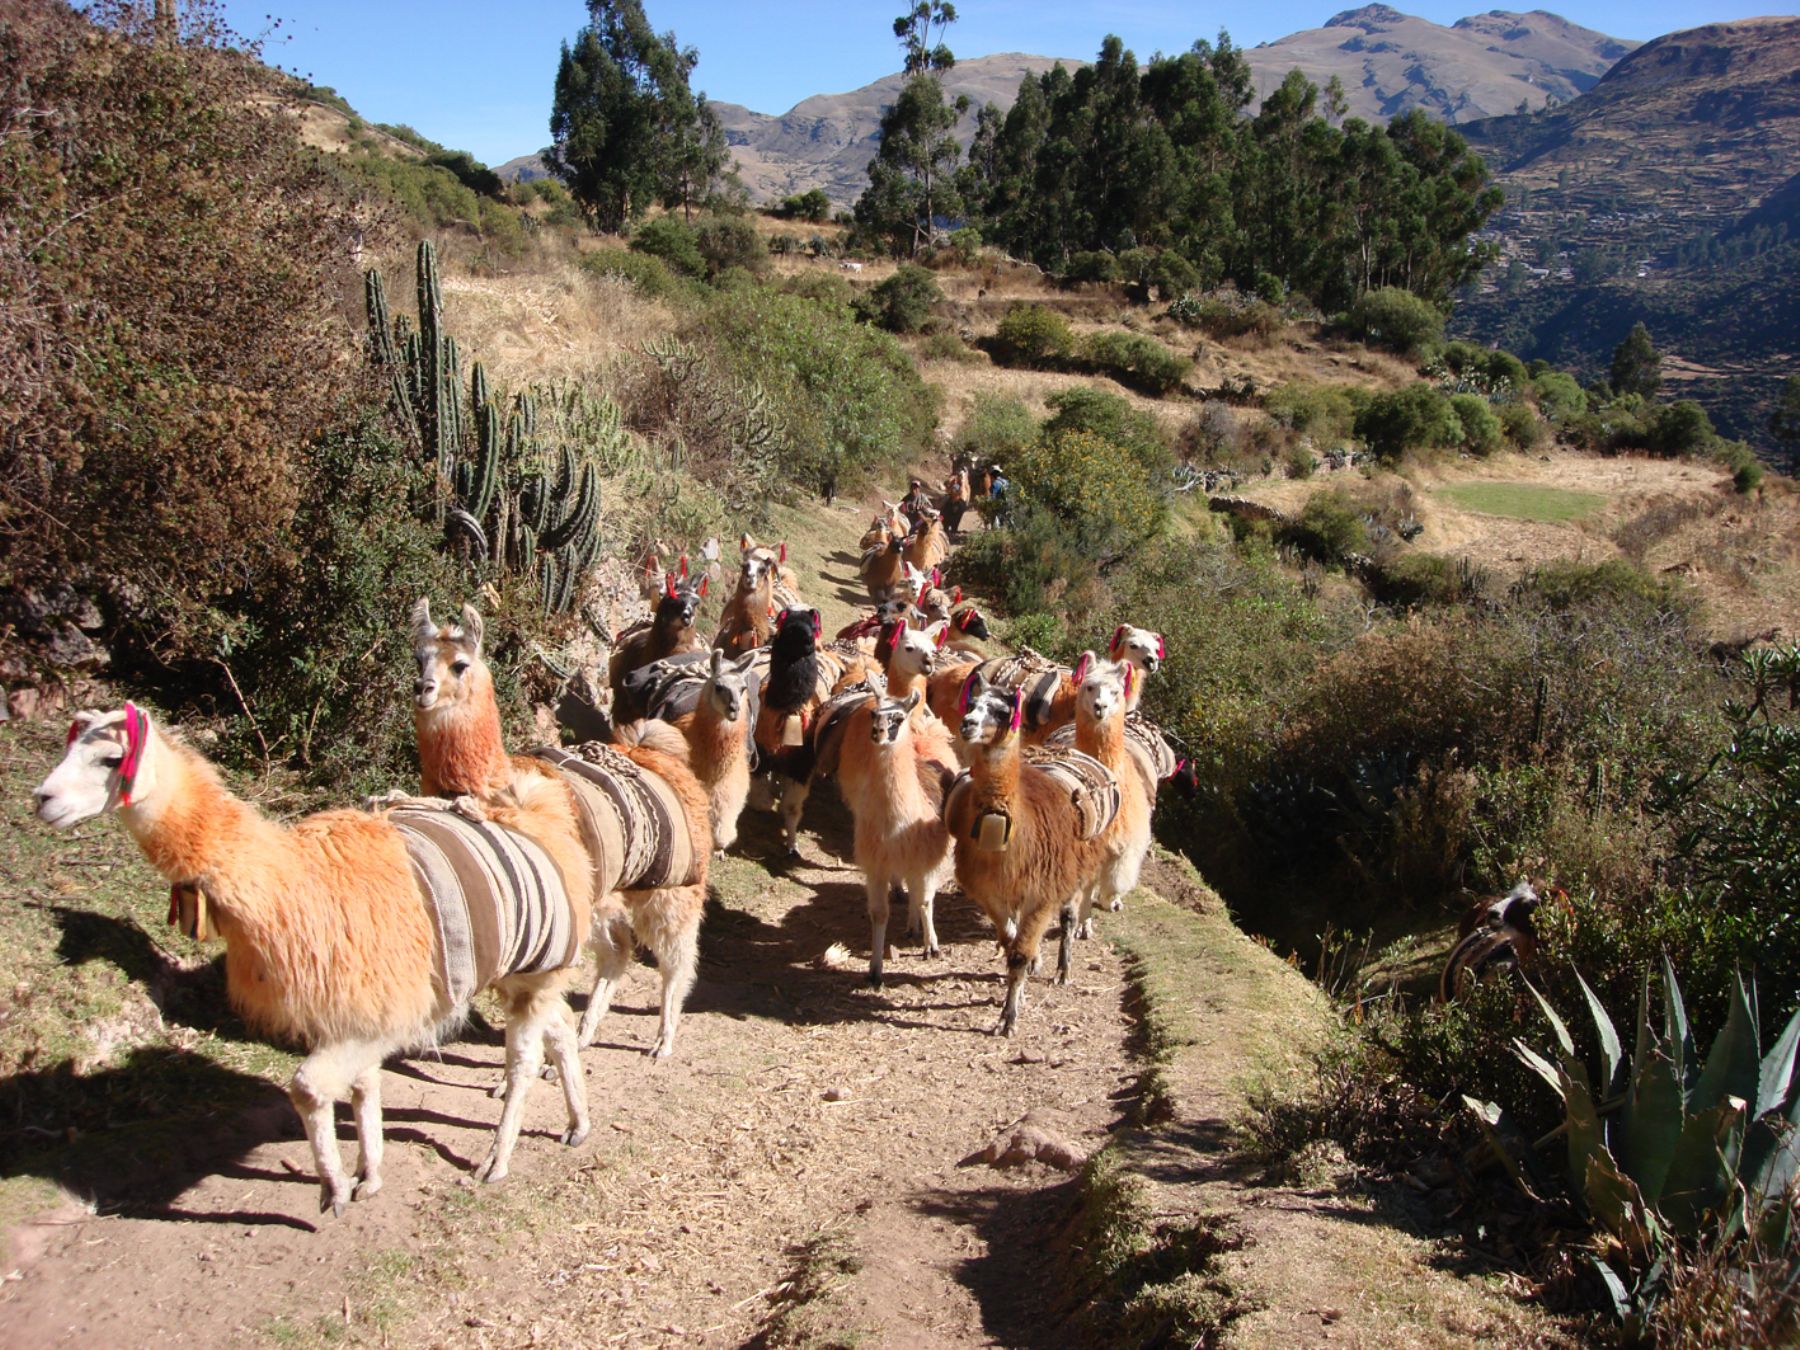 The Inca Trails go through Argentina, Bolivia, Chile, Colombia, Ecuador and Peru